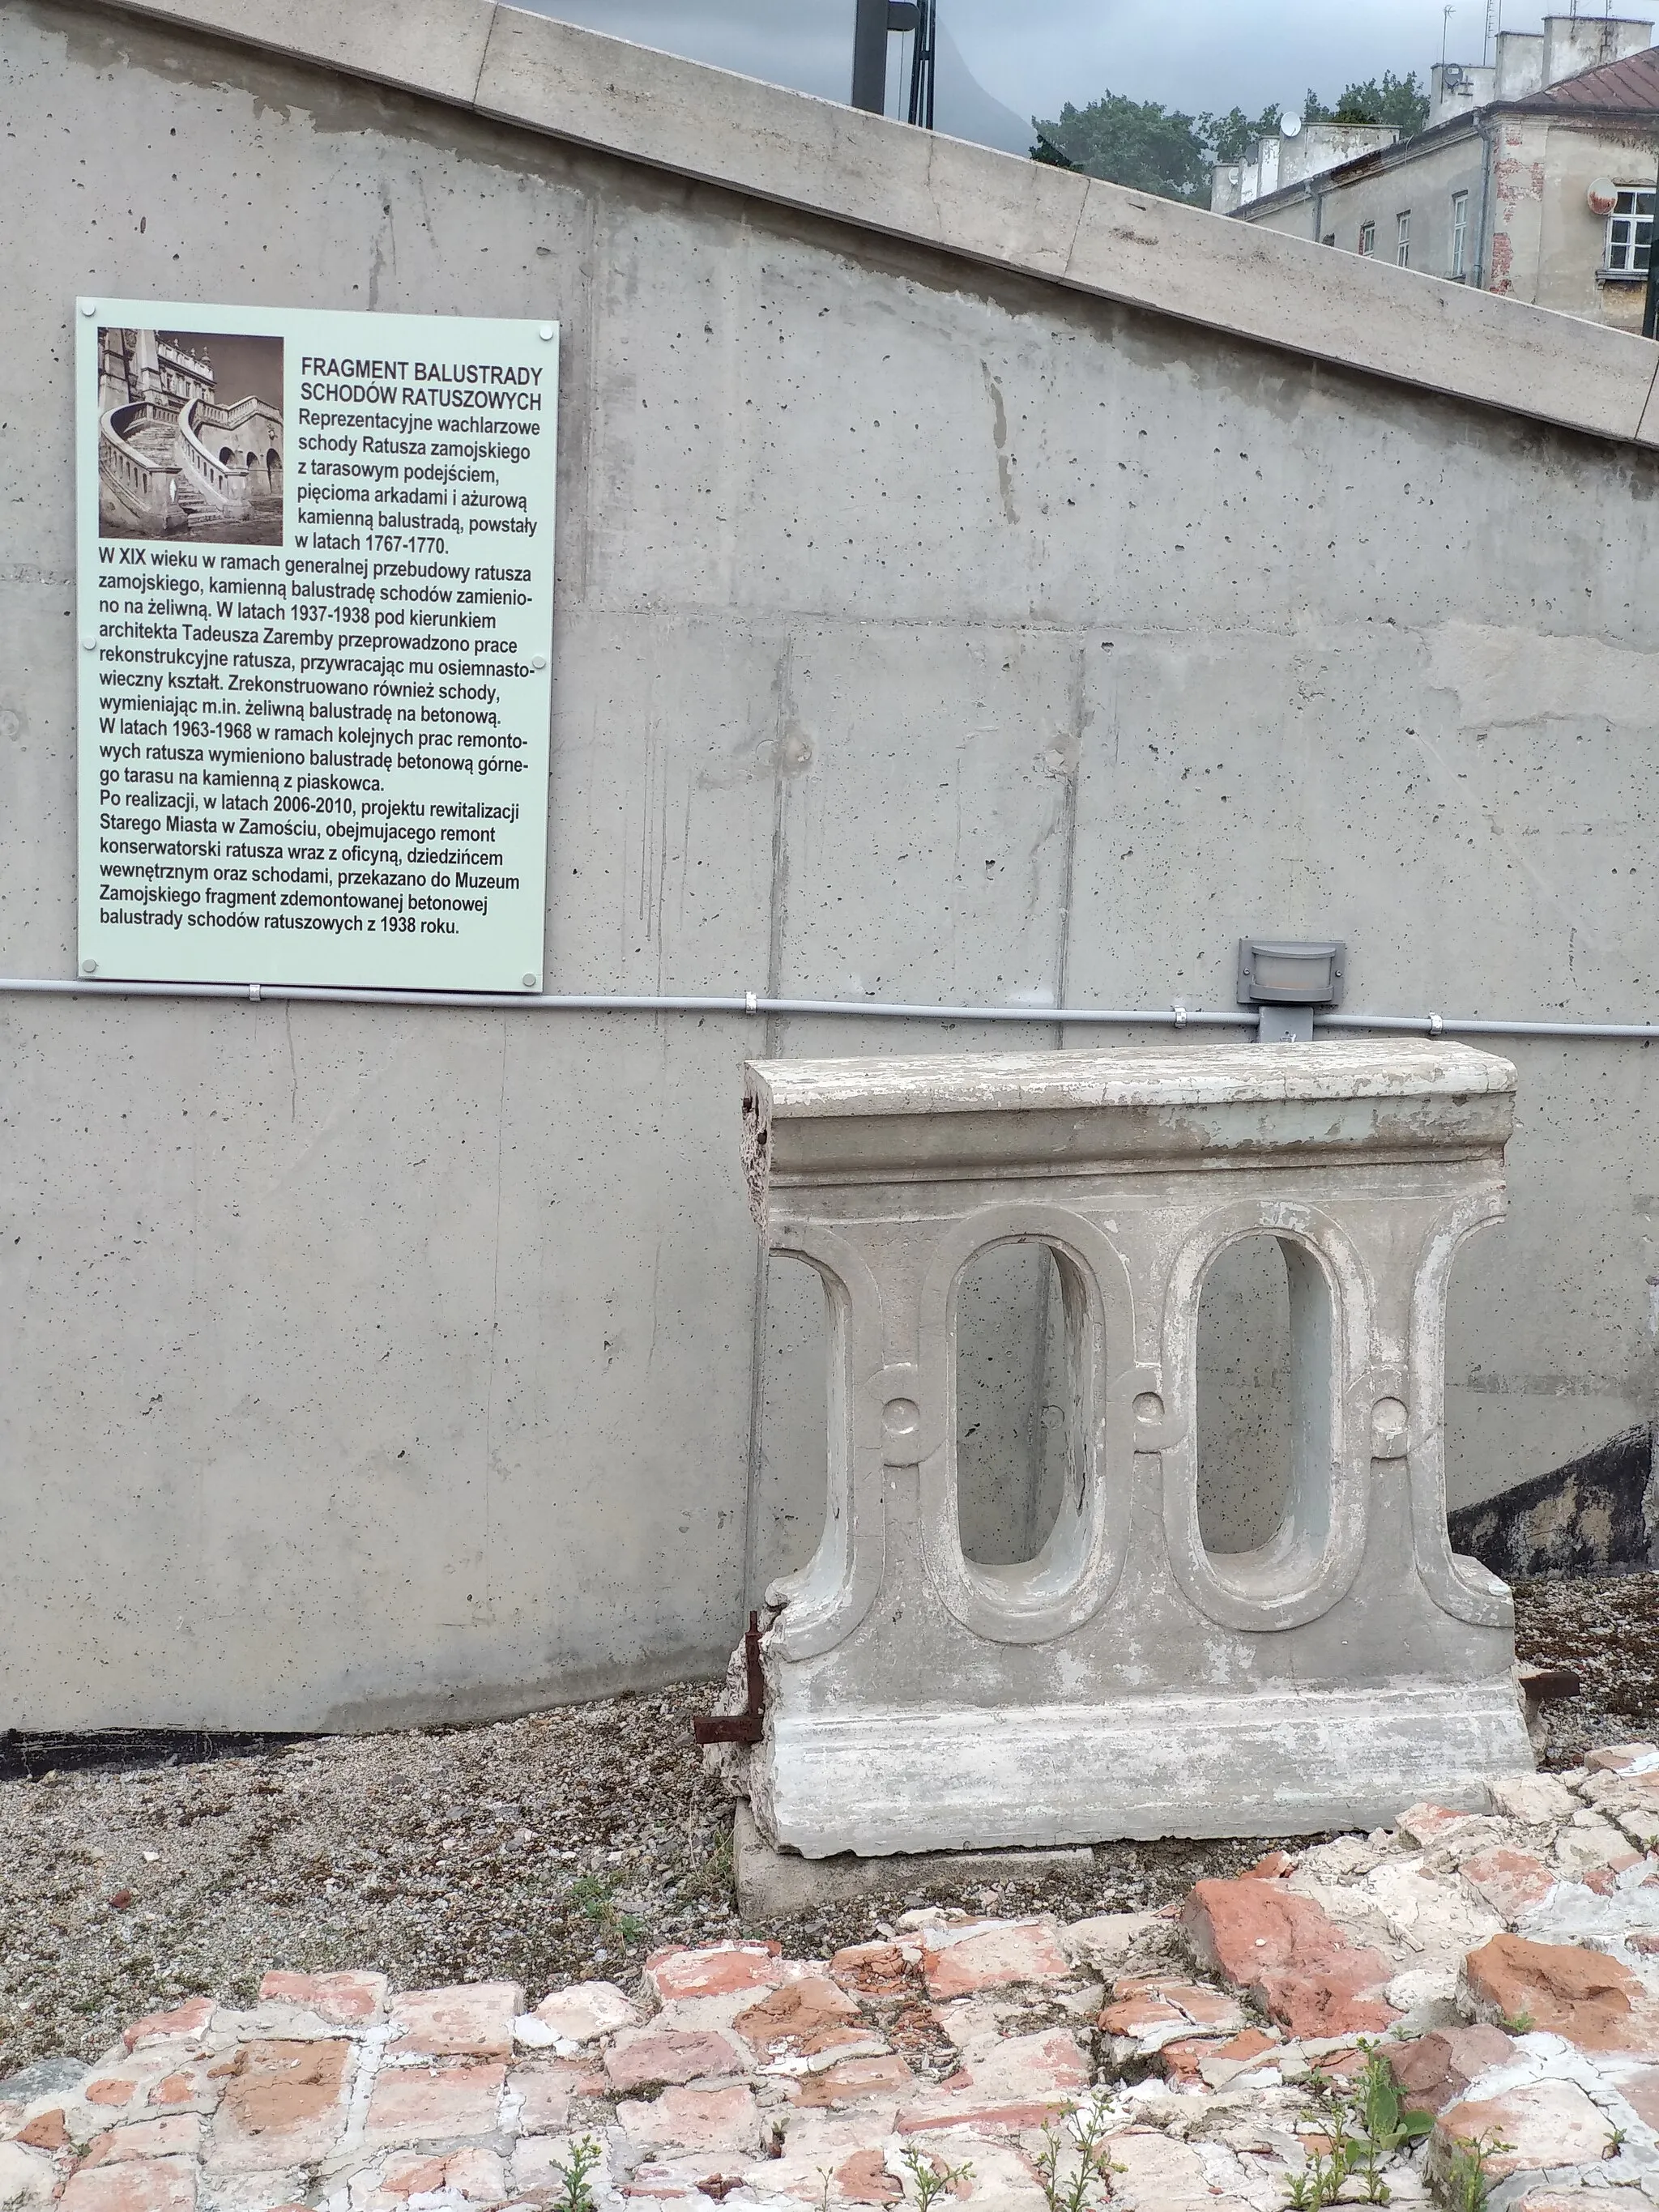 Photo showing: Fragment balustrady pochodzący z ratusza w Zamościu, eksponowany przy Arsenale w Zamościu.